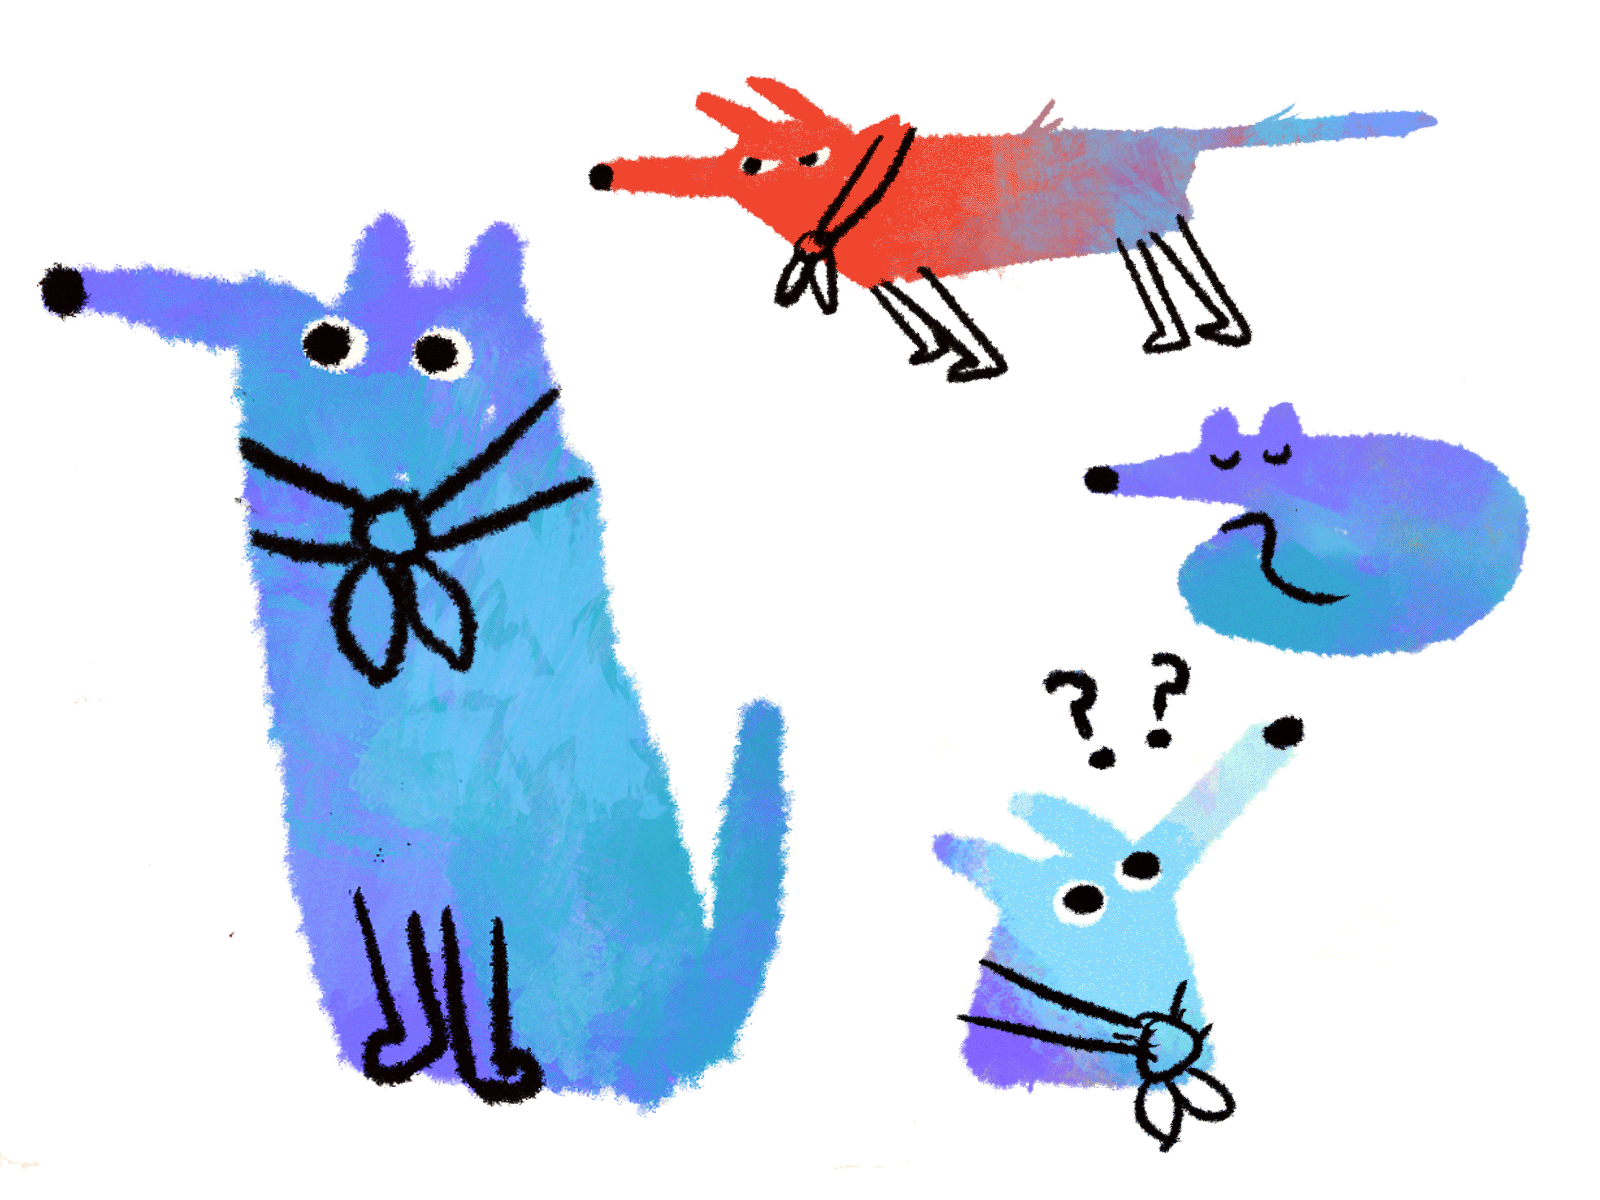 Guide dog illustration